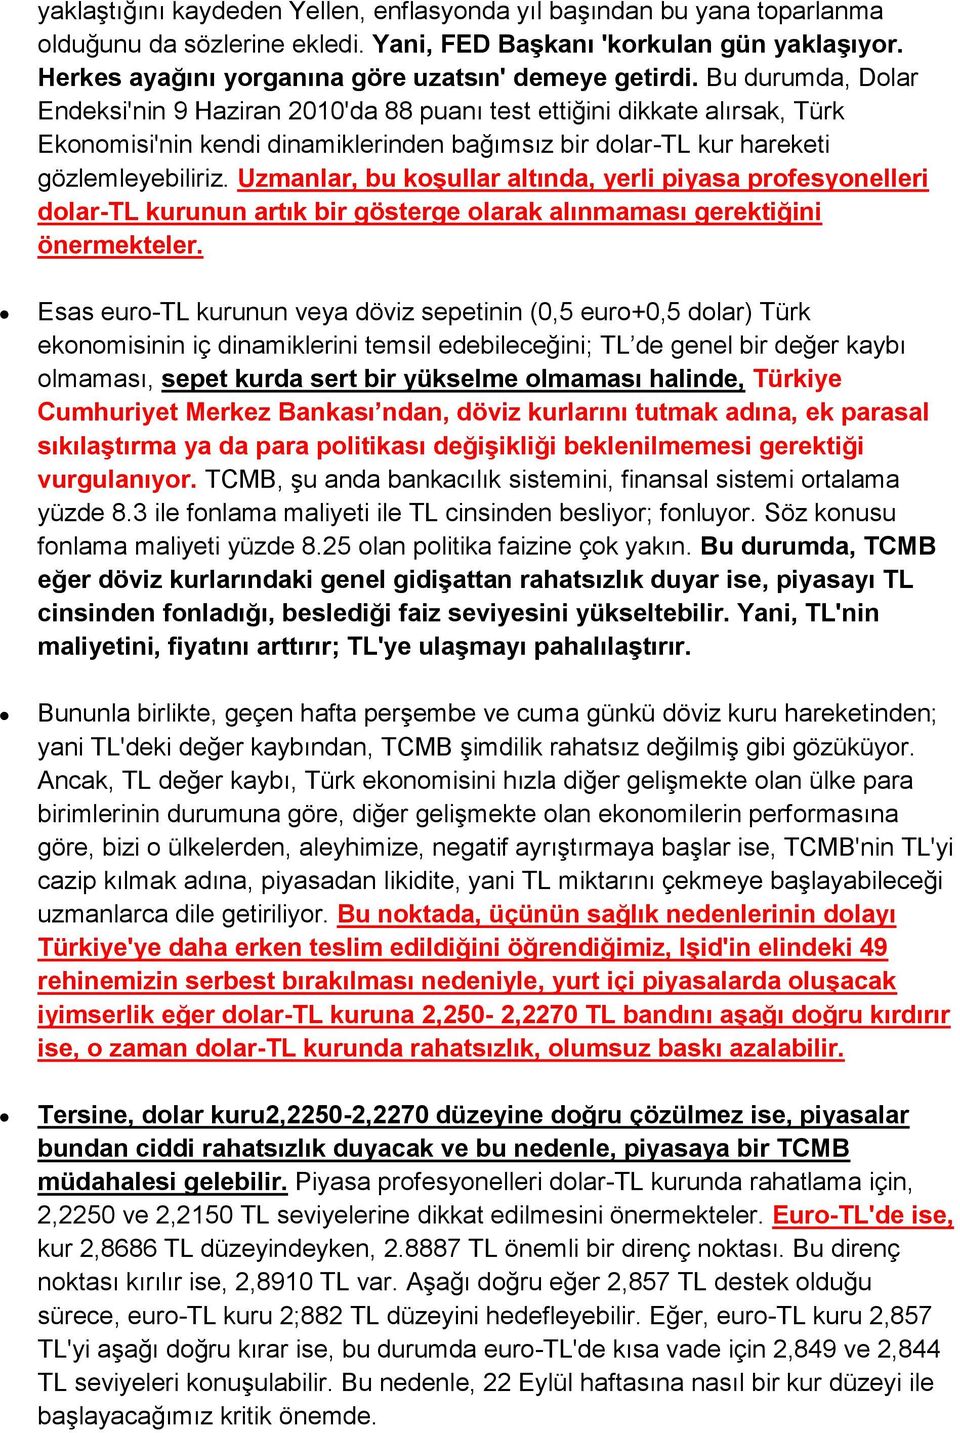 Bu durumda, Dolar Endeksi'nin 9 Haziran 2010'da 88 puanı test ettiğini dikkate alırsak, Türk Ekonomisi'nin kendi dinamiklerinden bağımsız bir dolar-tl kur hareketi gözlemleyebiliriz.